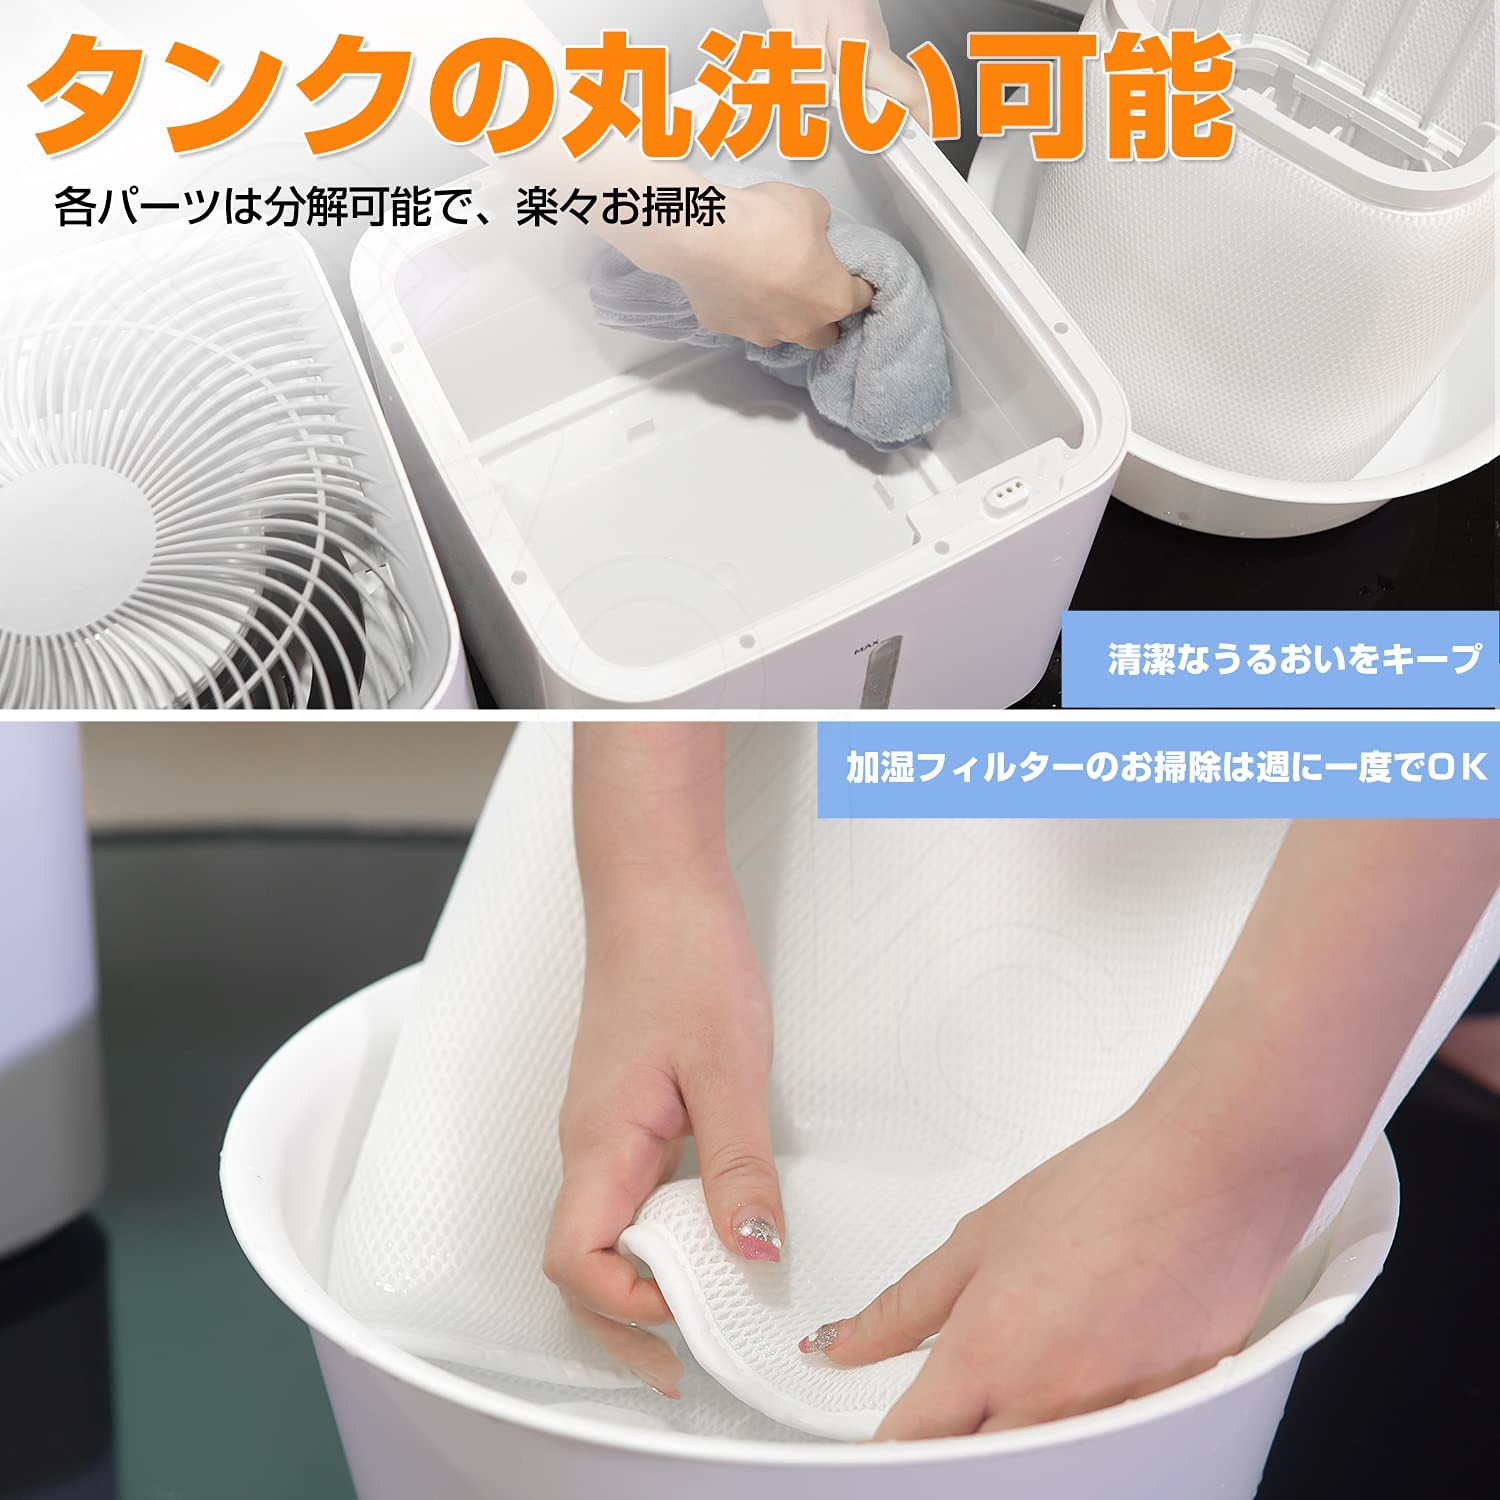 日本 声で操作できる 速やかに加湿する12L気化式加湿器 冬場の強い味方